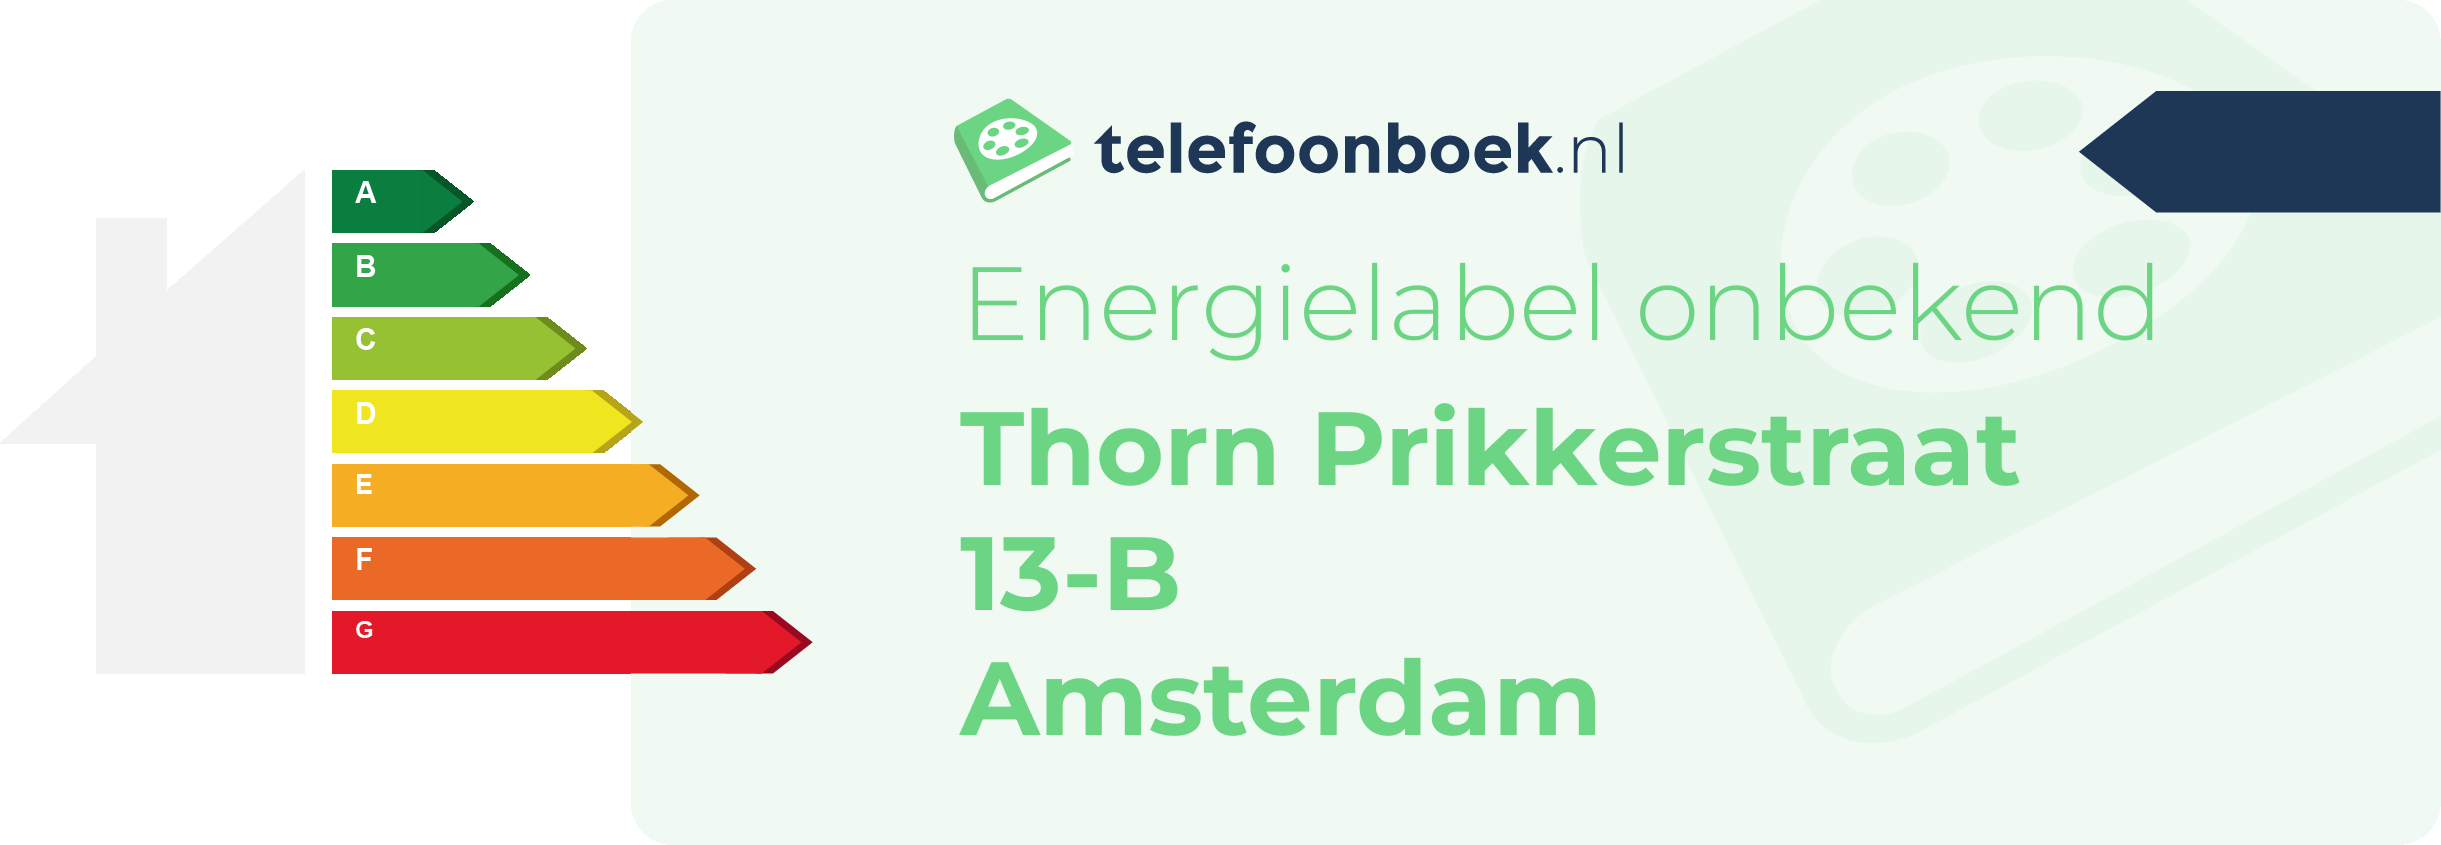 Energielabel Thorn Prikkerstraat 13-B Amsterdam